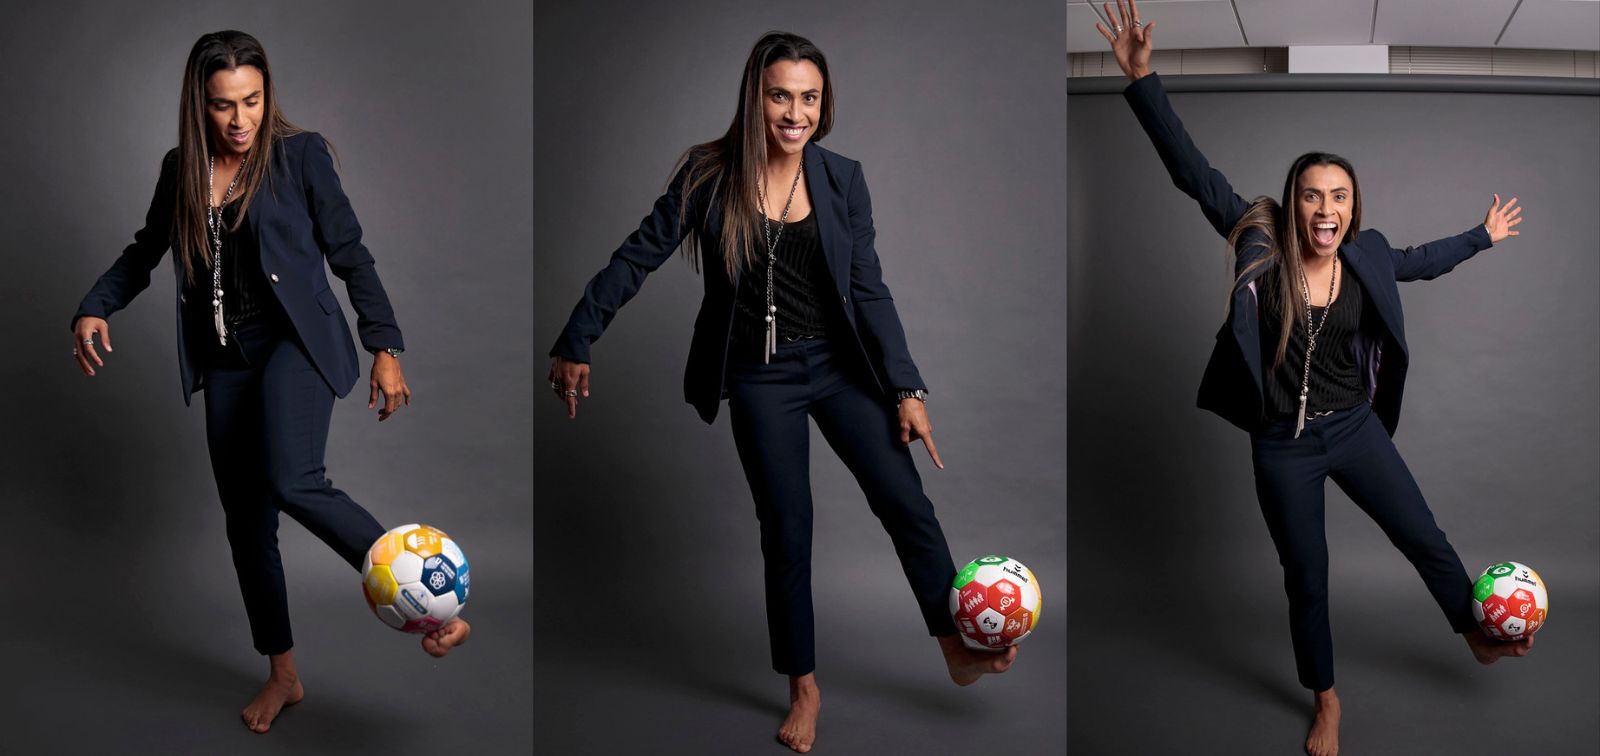 Women's Football World Cup Gender Gap